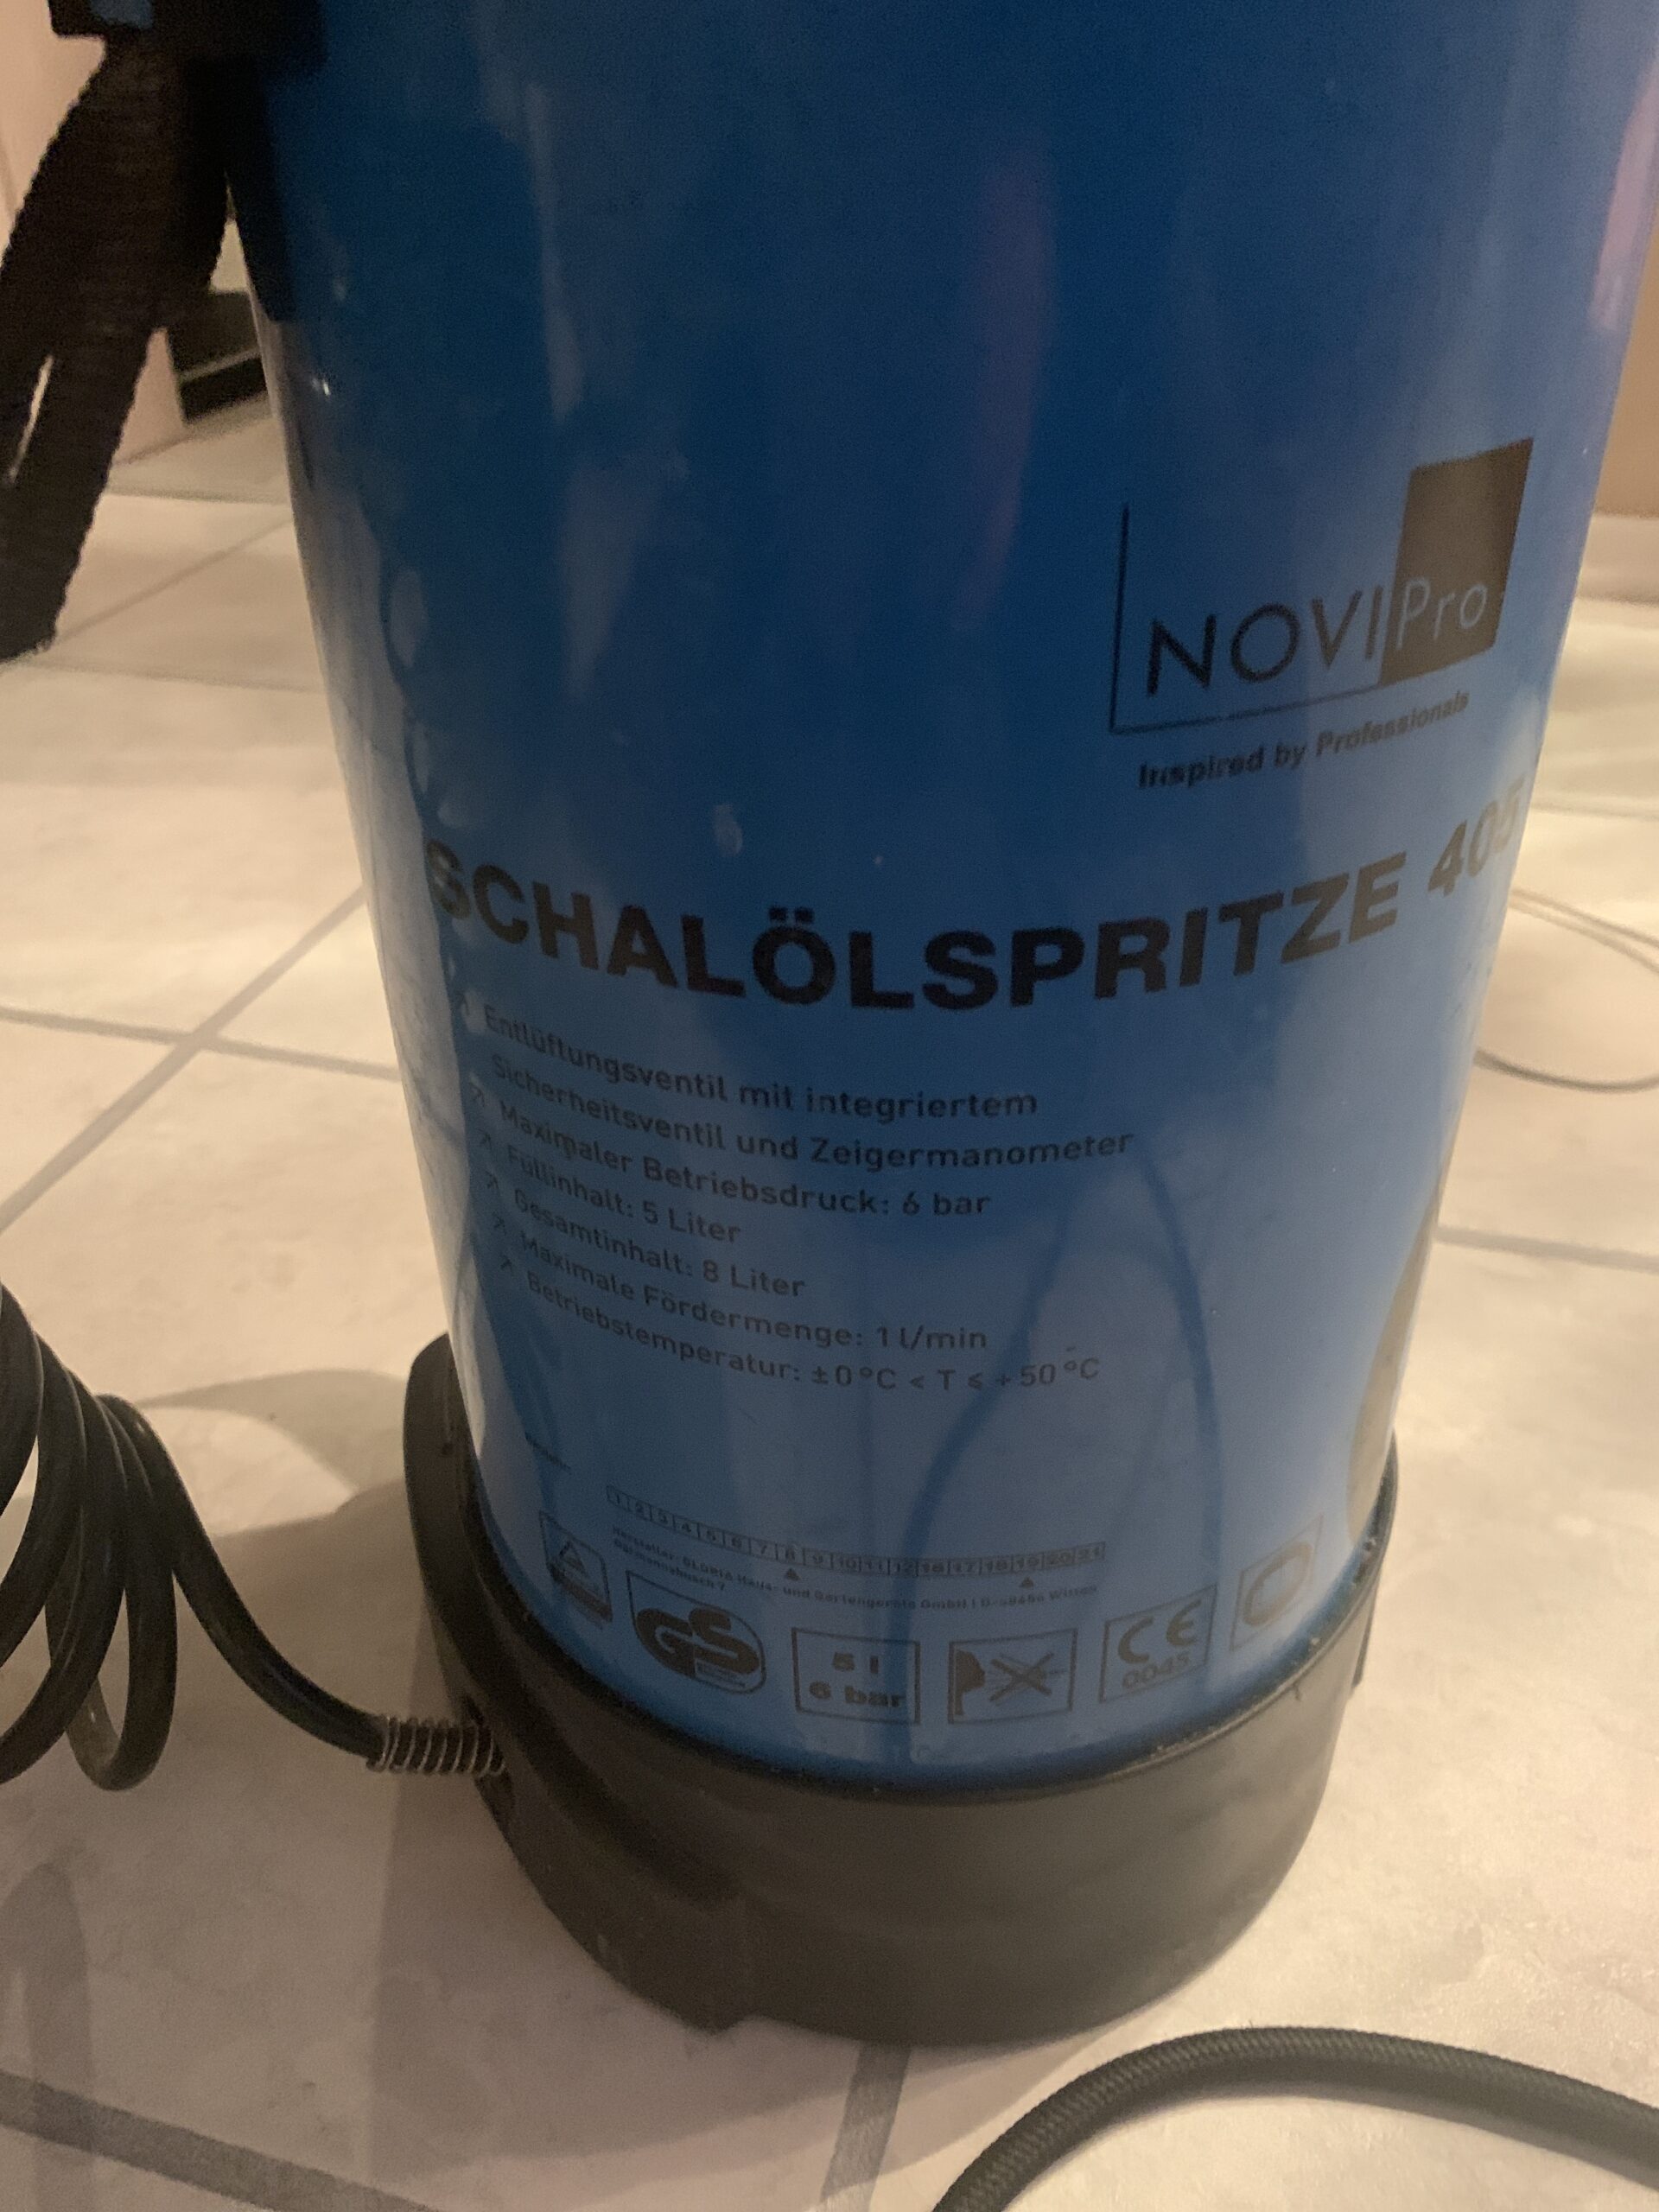 Schalölspritze NoviPro